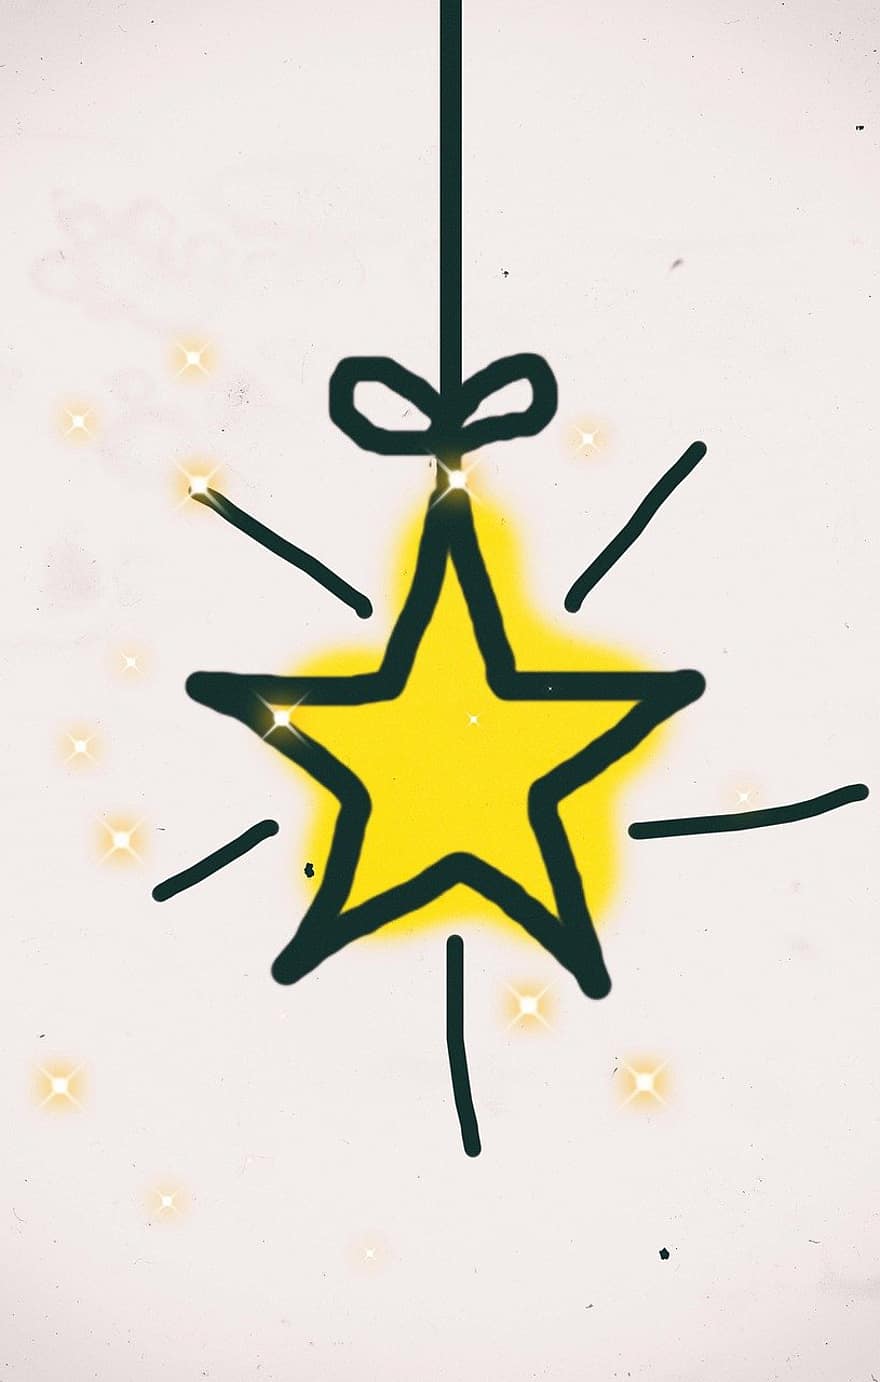 stella, splendere, luce, Natale, betlemme, sfondi, celebrazione, decorazione, astratto, inverno, illustrazione